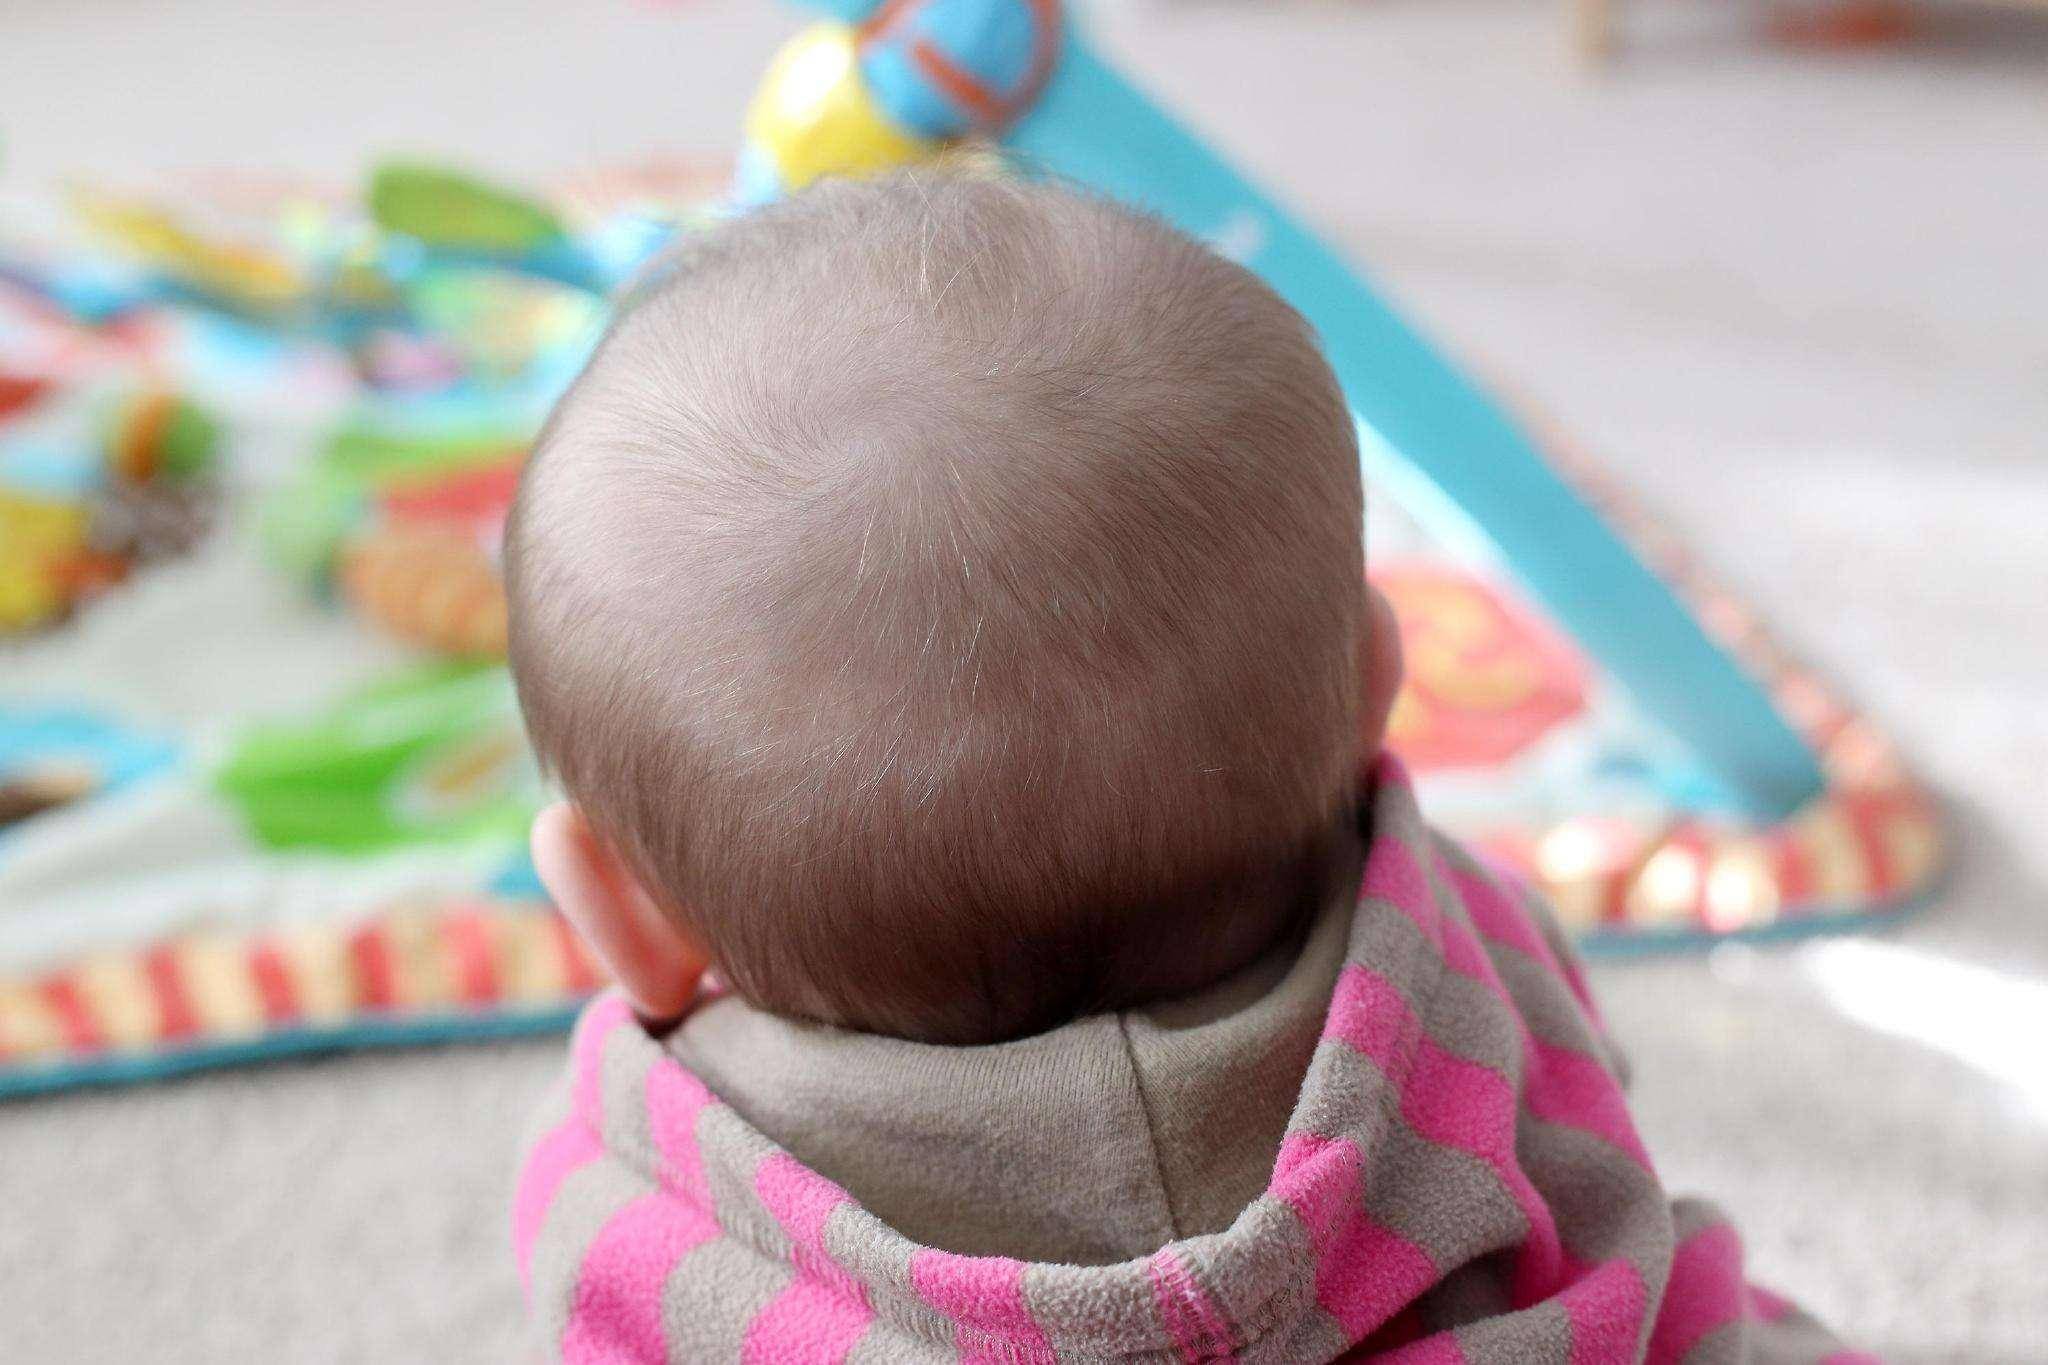 答:如果宝宝的后脑勺秃了一圈,这叫做枕秃,是婴儿的正常脱发